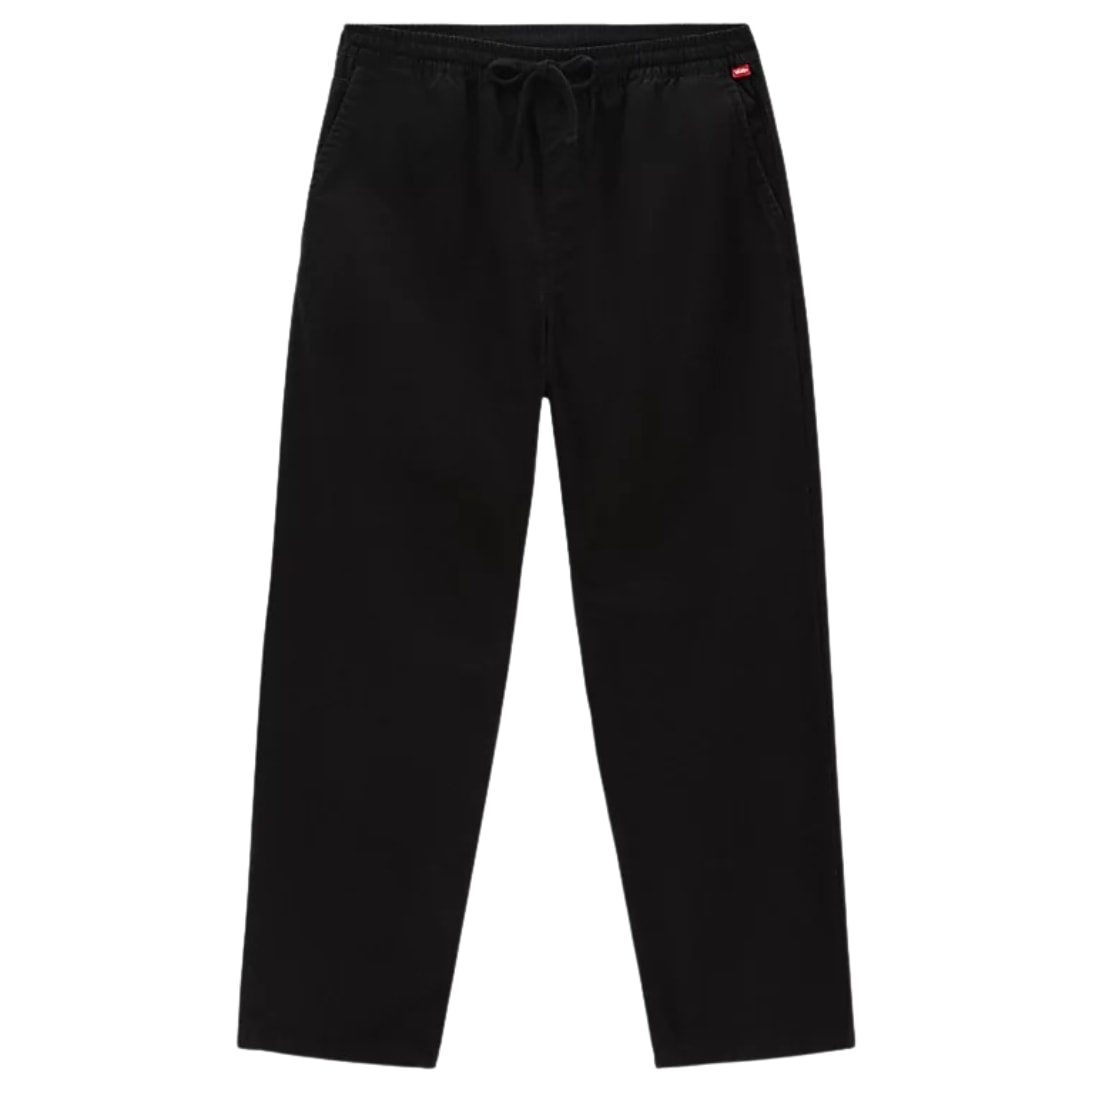 Vans Range Baggy Tapered Elastic Waist Trousers - Black - Mens Chino Pants/Trousers by Vans